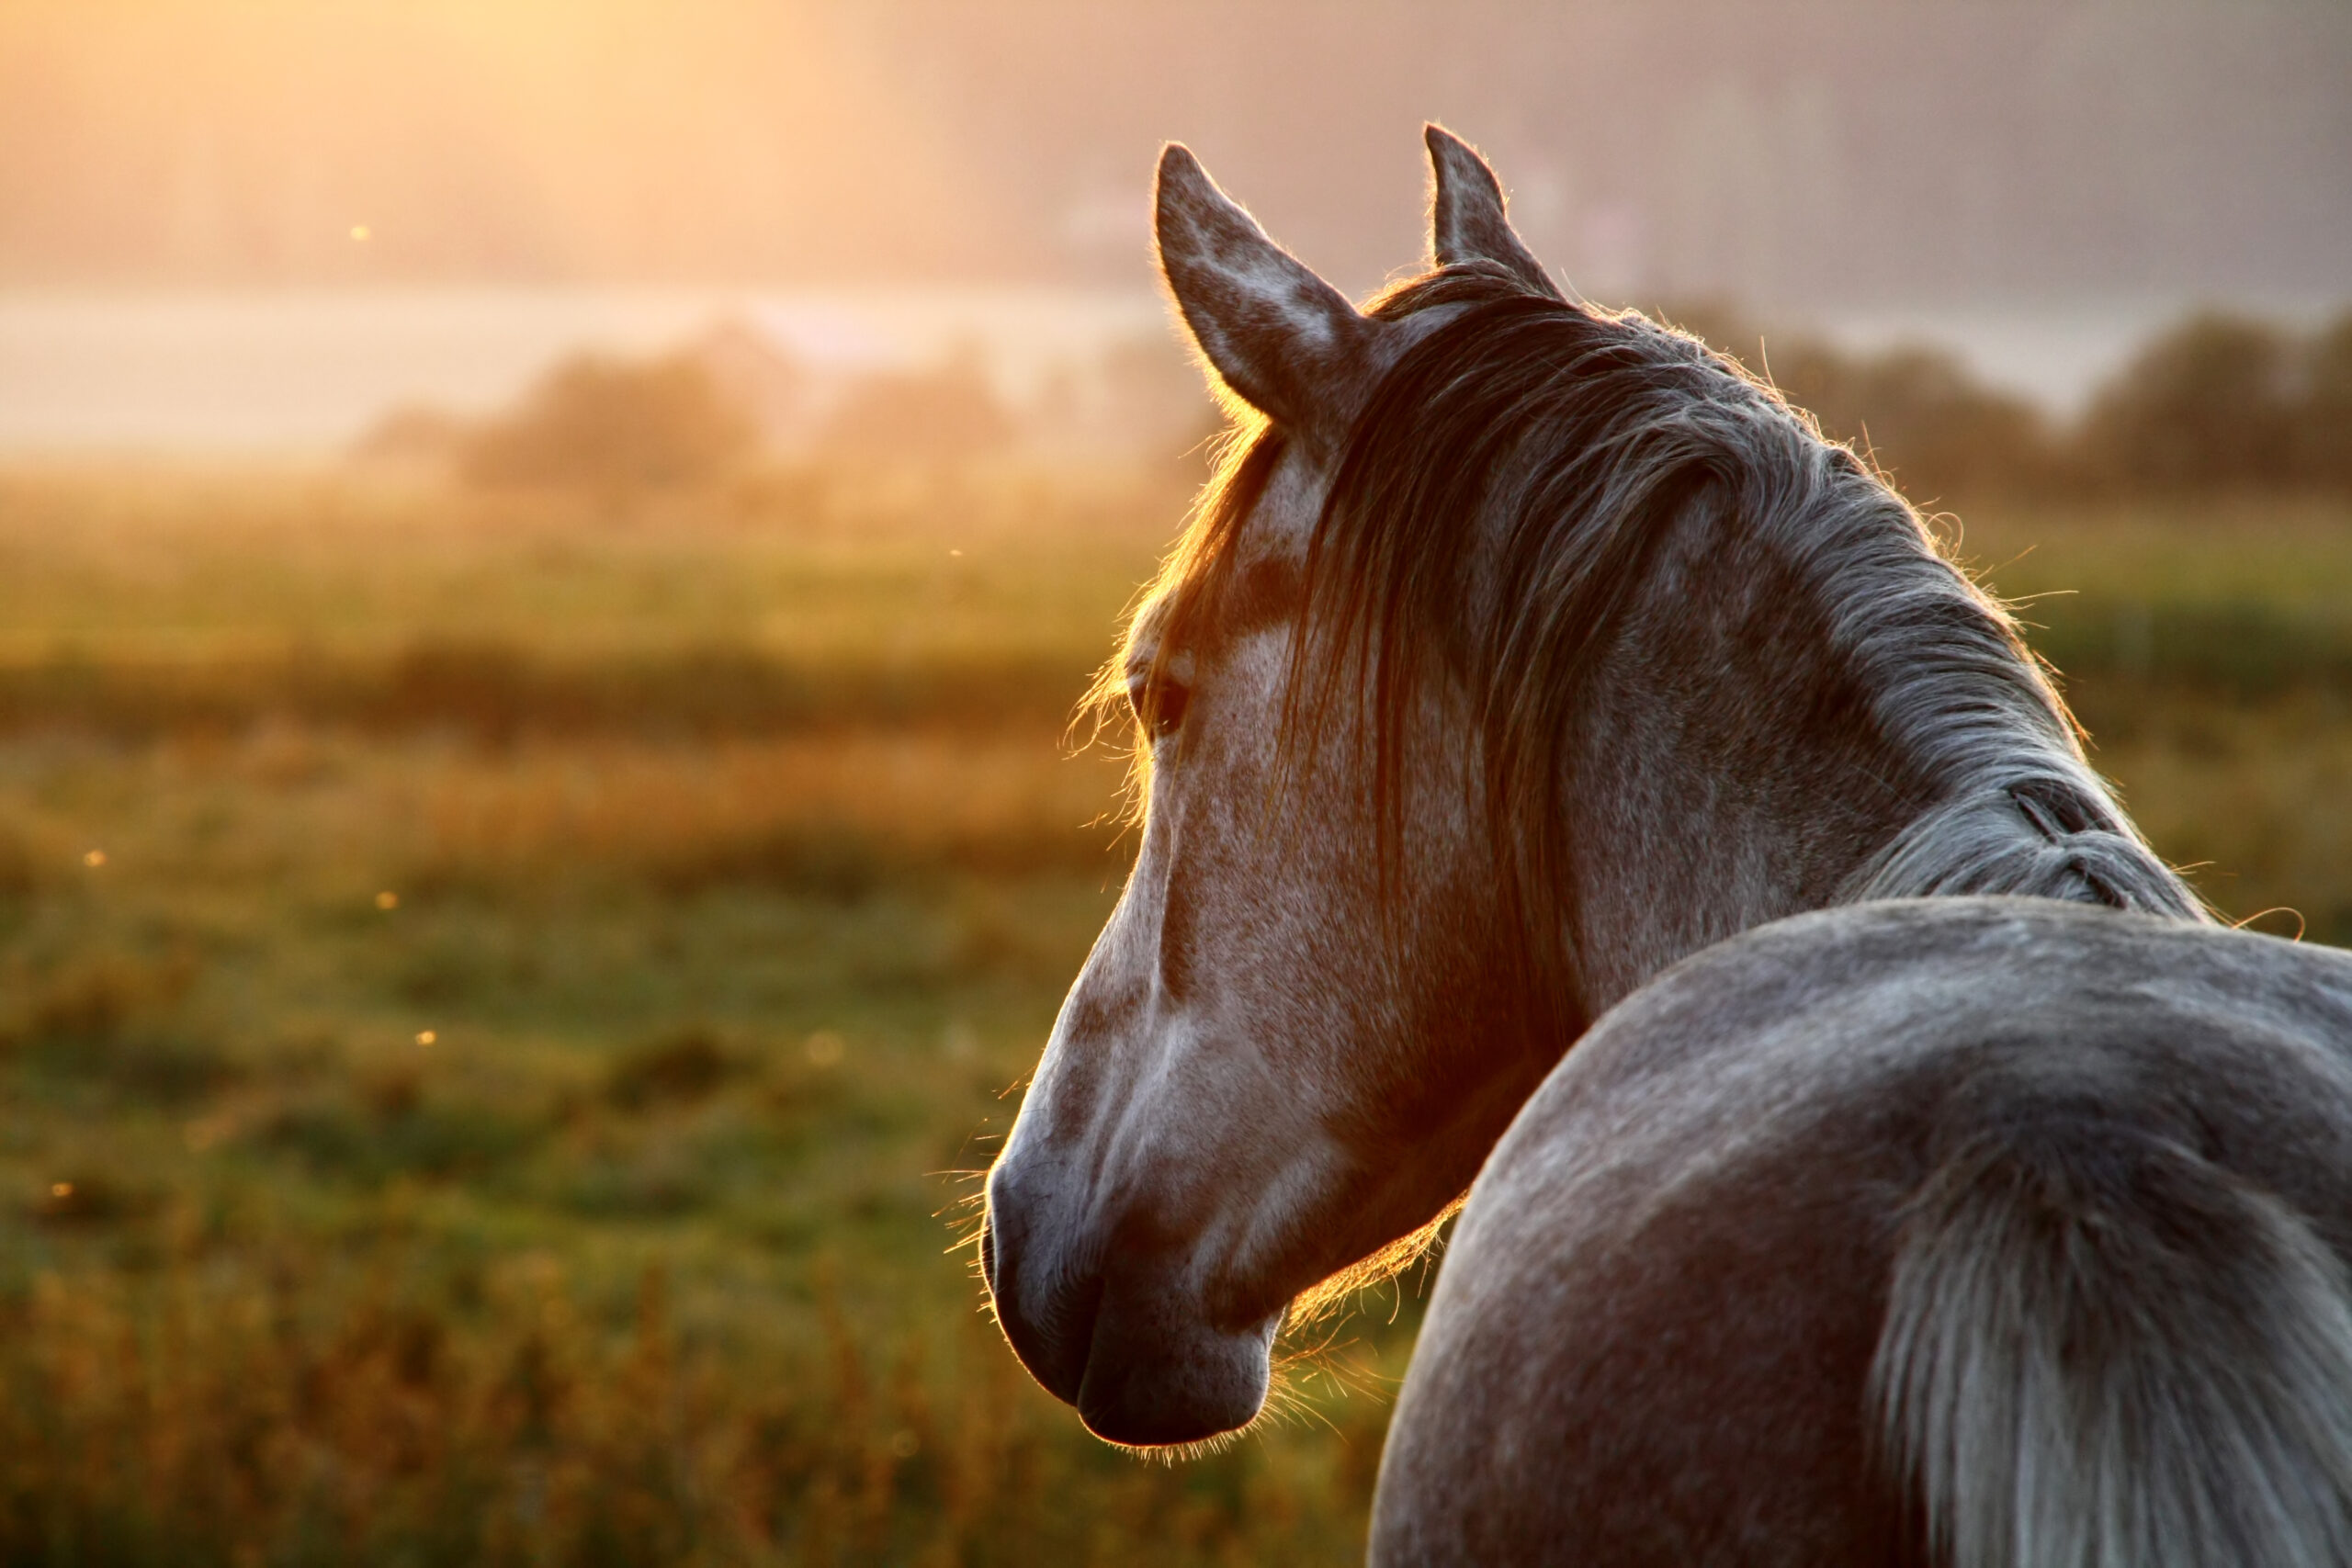 Hest med solnedgang i baggrunden - overholdelse af miljøregler